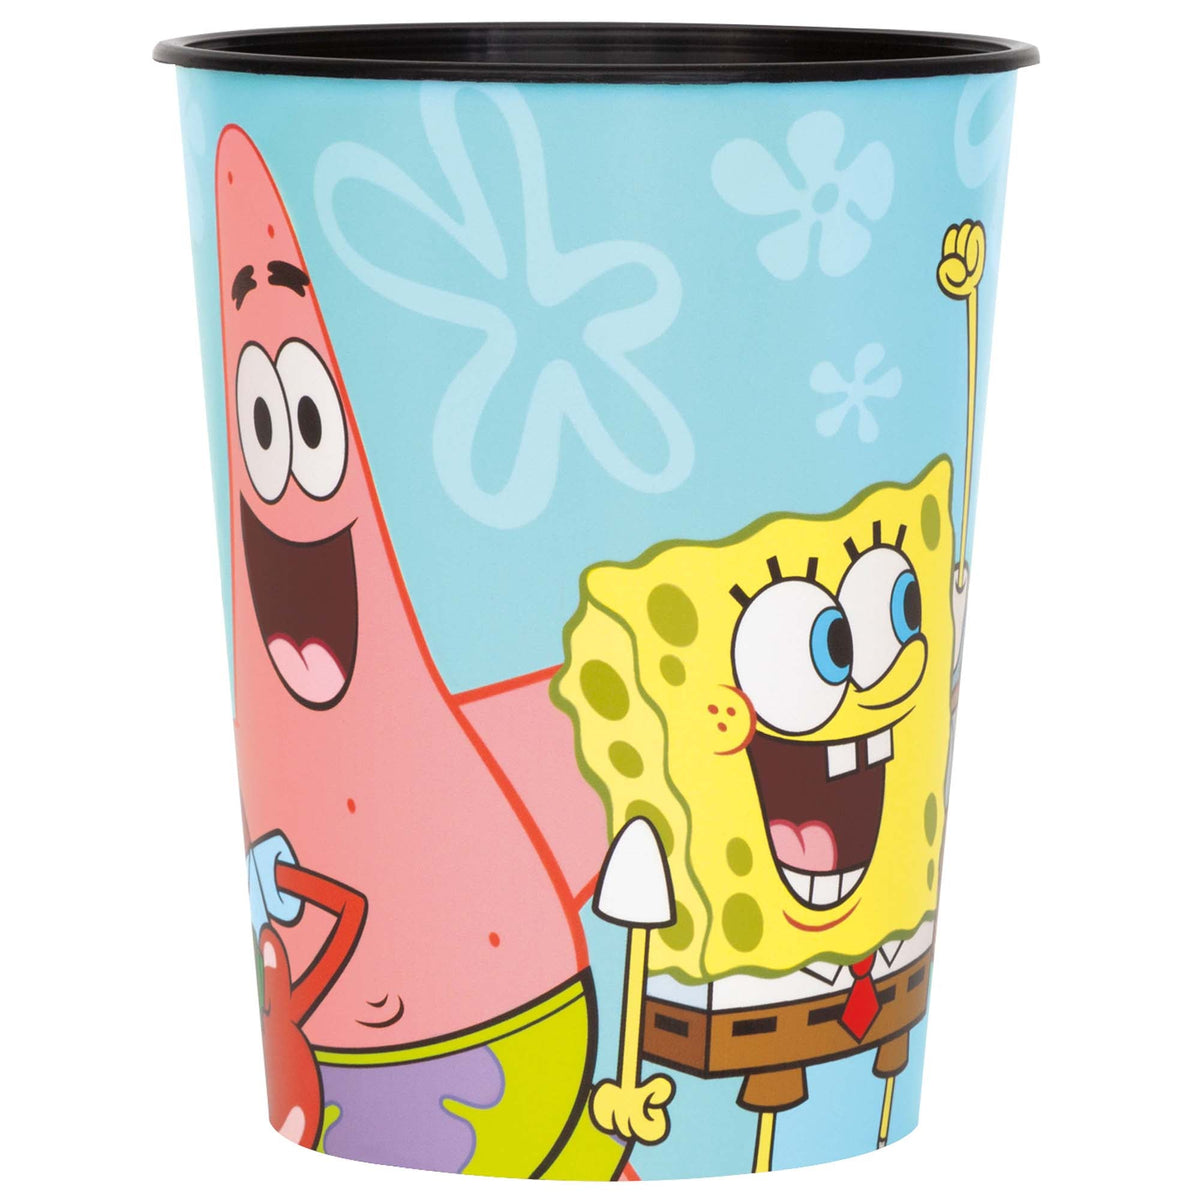 UNIQUE PARTY FAVORS Kids Birthday SpongeBob SquarePants Paper Cups, 9 Oz, 8 Count